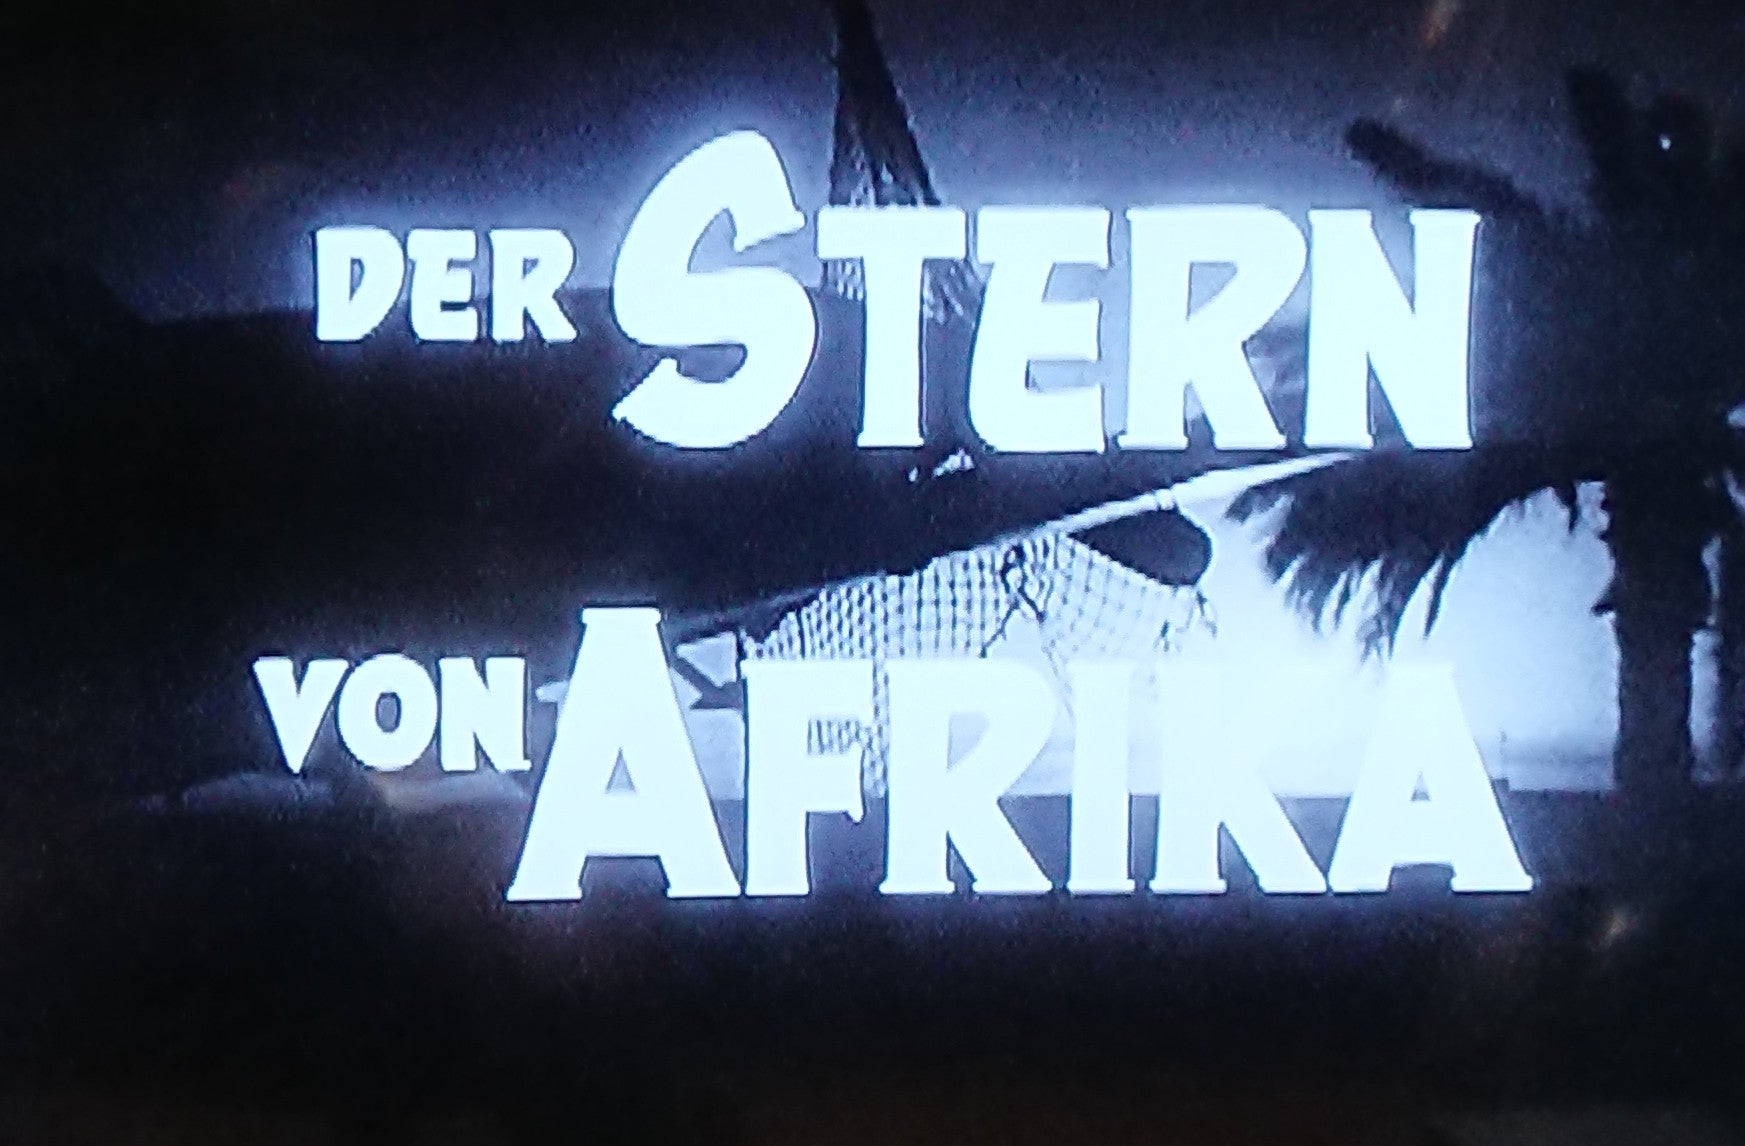 撃墜王アフリカの星(1957・西独、西) | まなぶんの戦争映画辞典